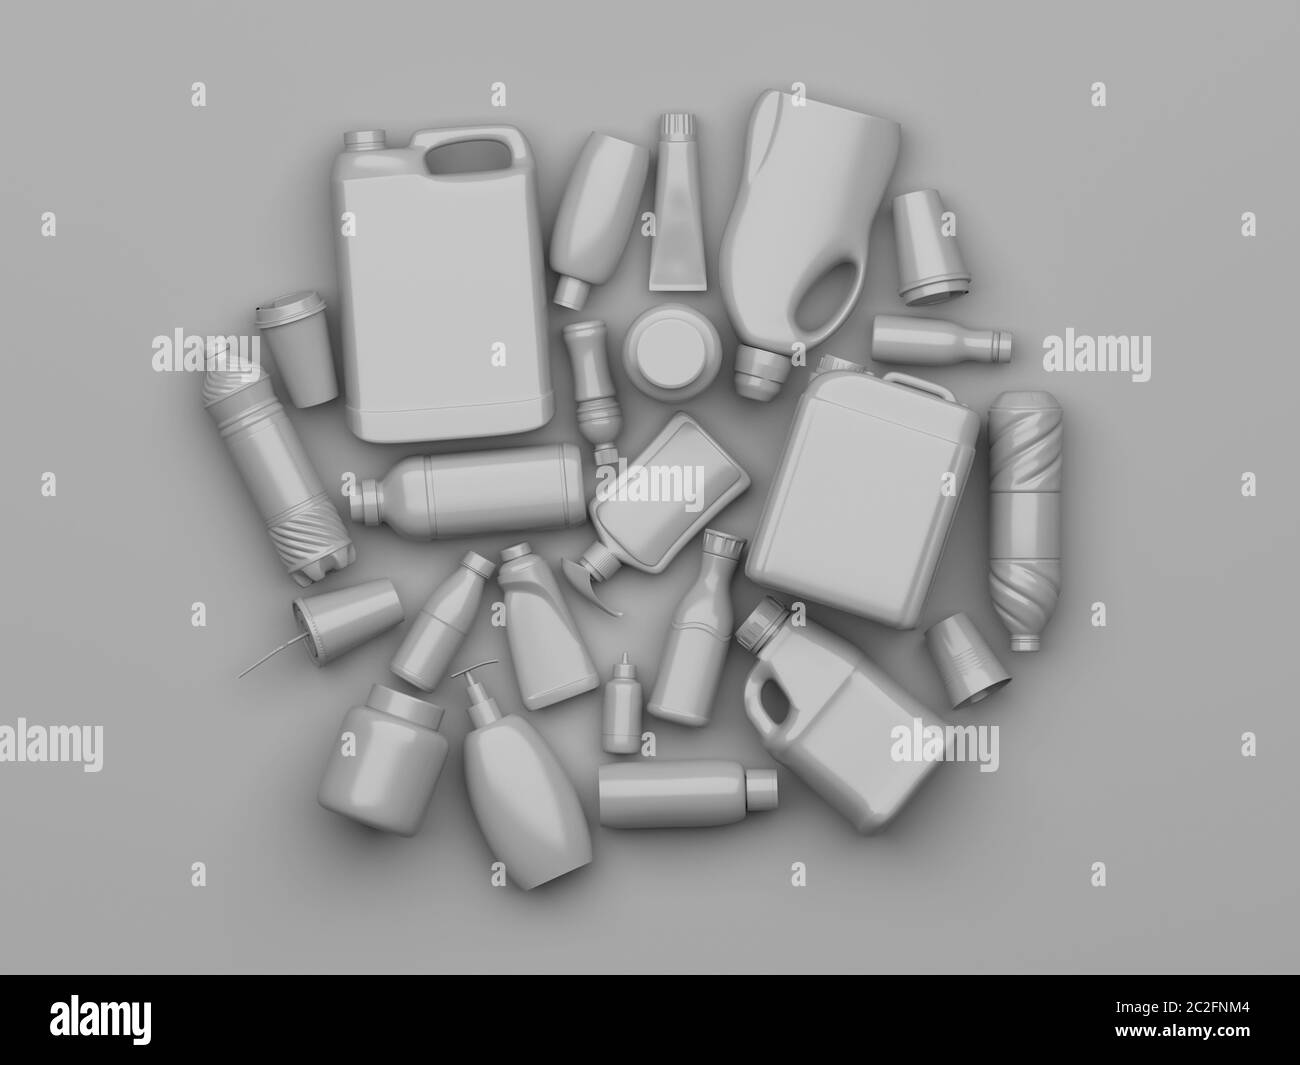 Jeu de contenants et de bouteilles en plastique usagés peints en gris sur fond gris. Composition conceptuelle créative sur le thème du tri et du processus Banque D'Images